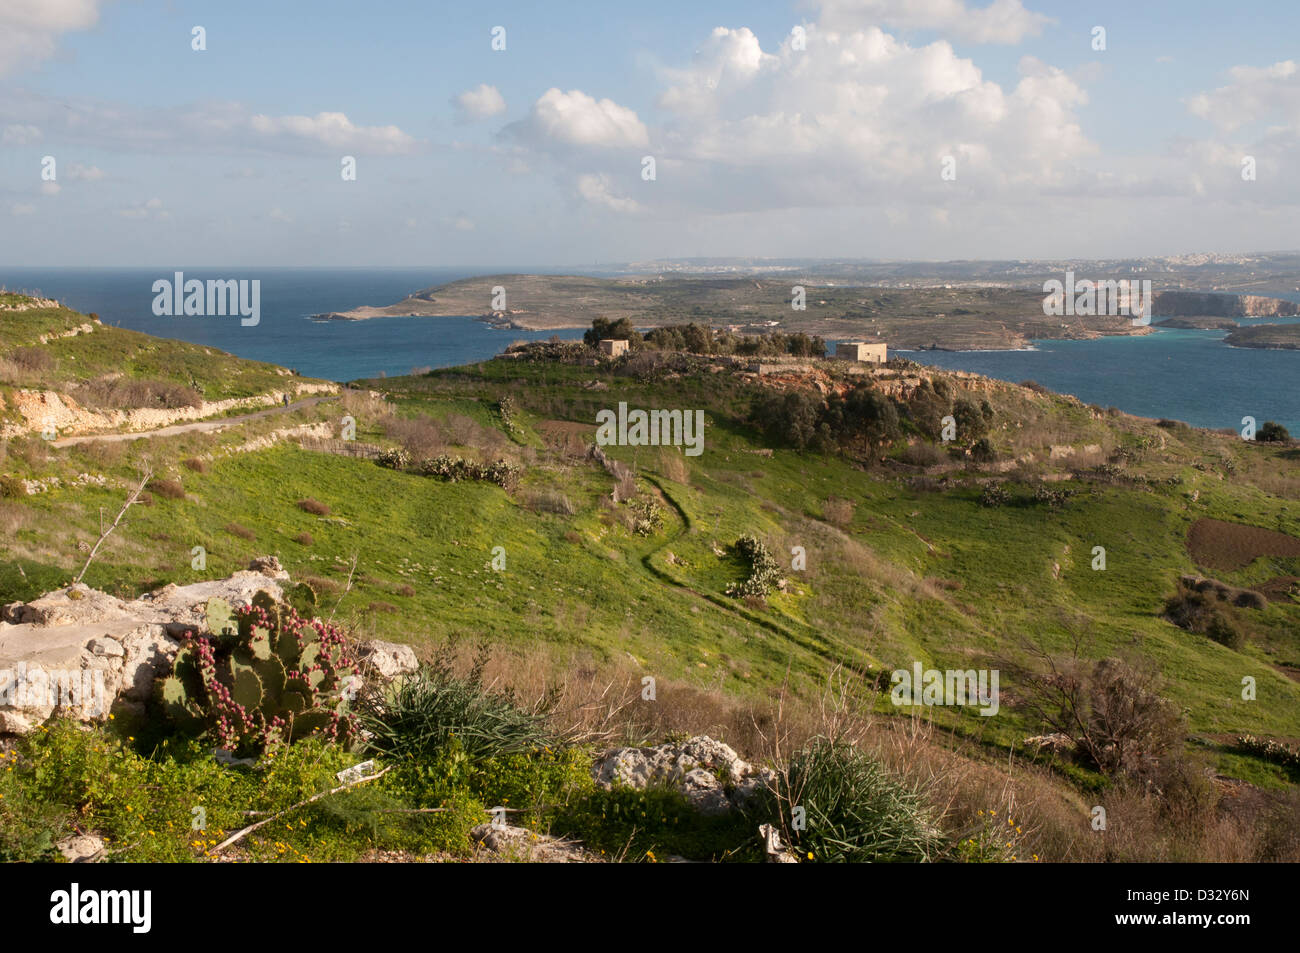 Gozo paesaggio, vista, erba, arbusti, pareti in pietra, il mare in lontananza, sole, cielo blu e nuvole bianche rocce. Foto Stock